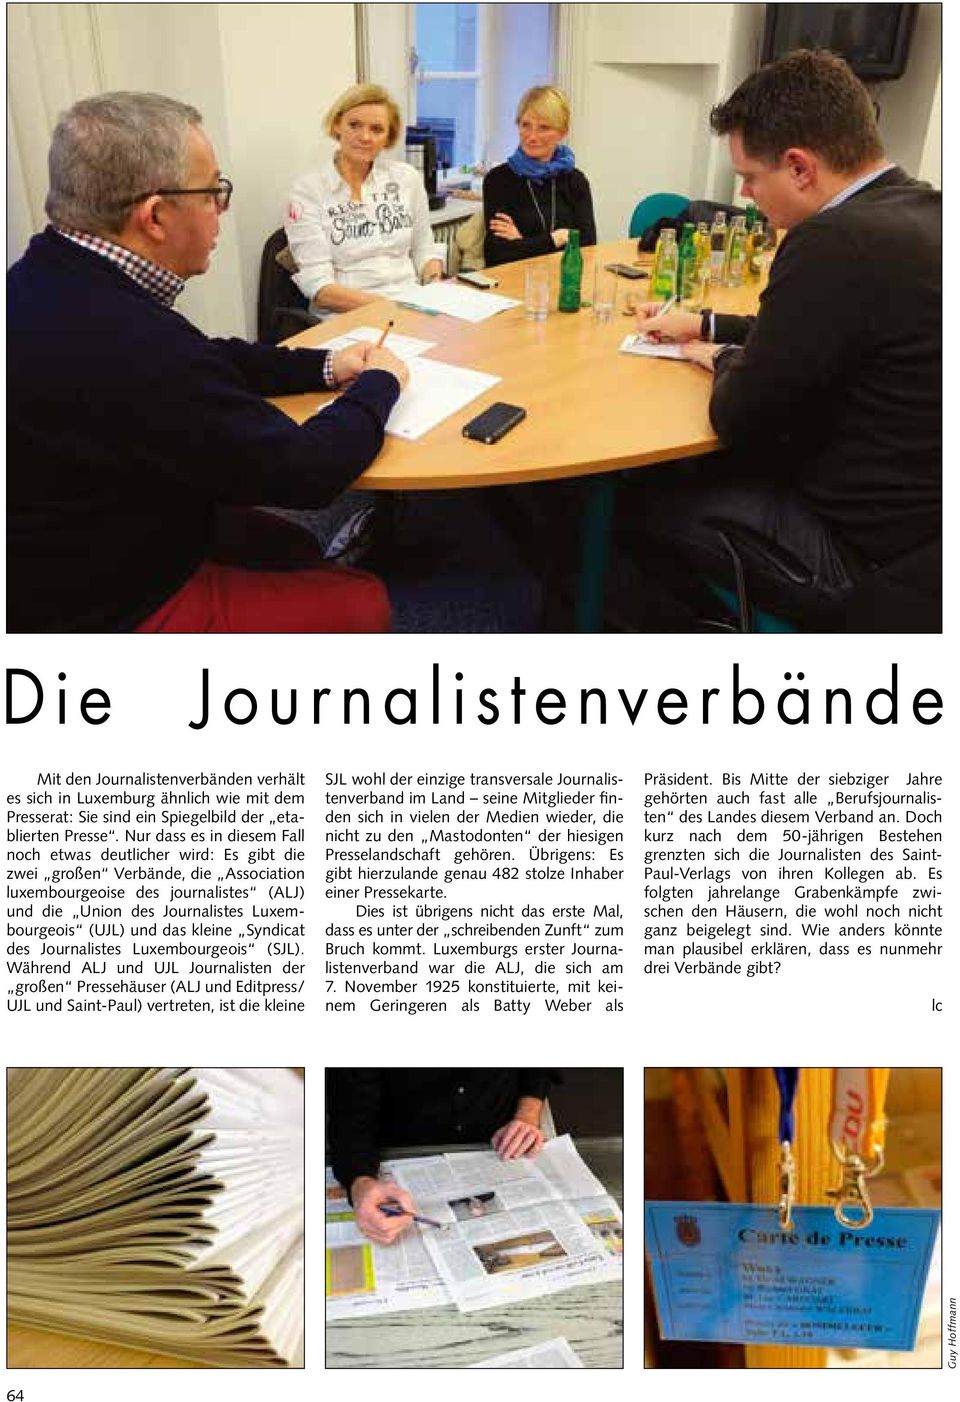 das kleine Syndicat des Journalistes Luxembourgeois (SJL).